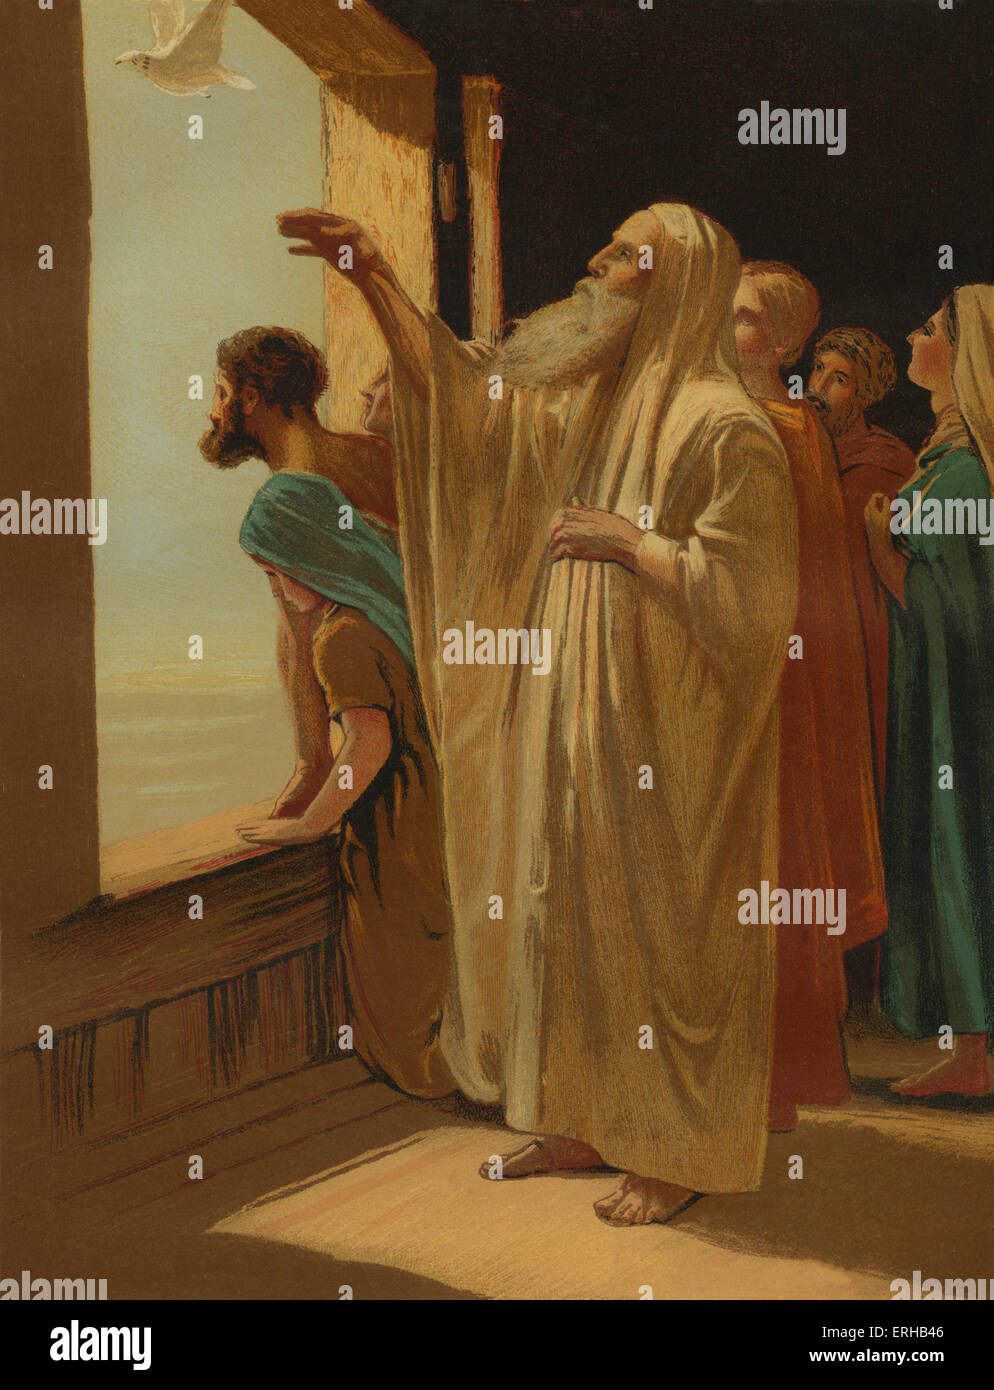 Noè rilasciando la colomba dall'arca dopo il diluvio cessa(Genesi 8:6). Illustrazione di Philip Morris R (1836-1902). Foto Stock